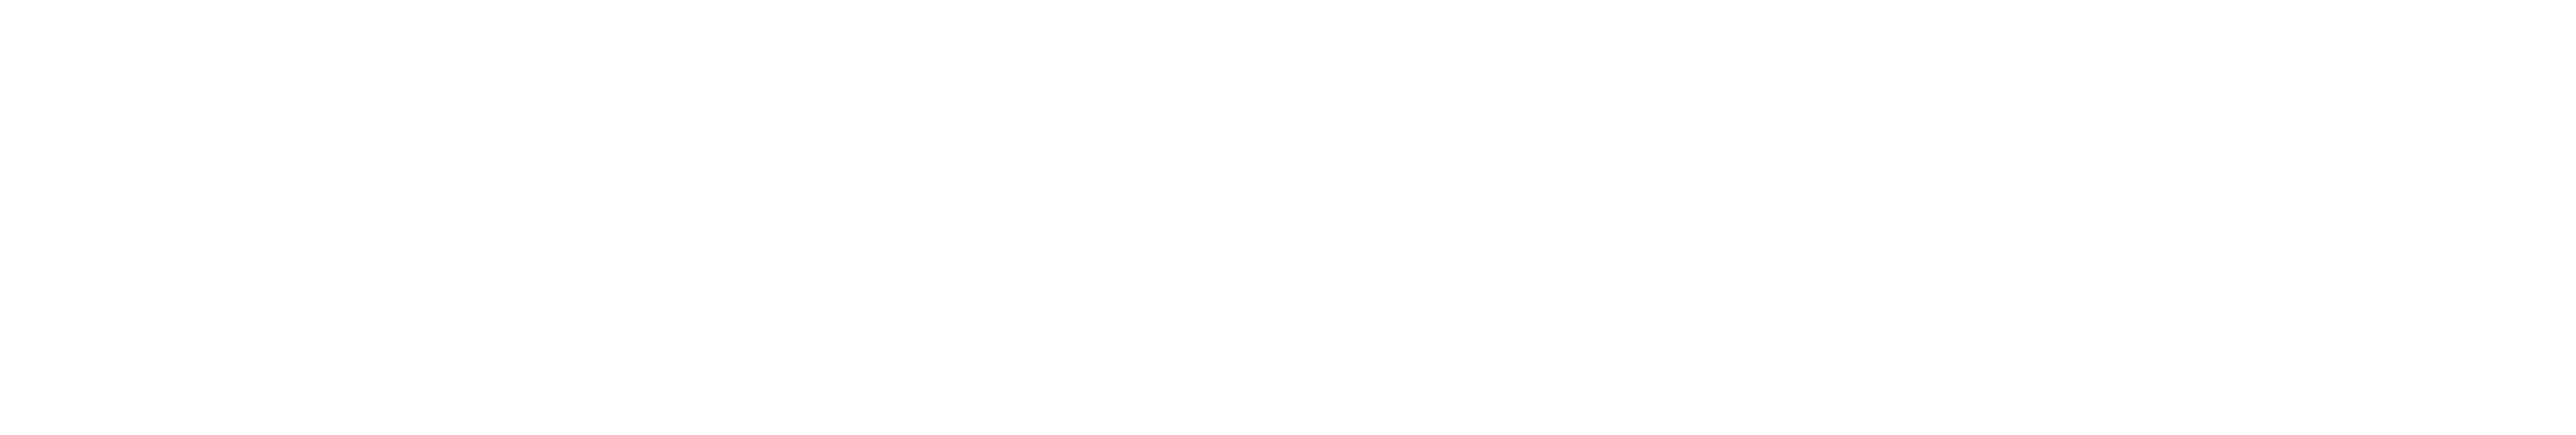 Calcus tech white logo